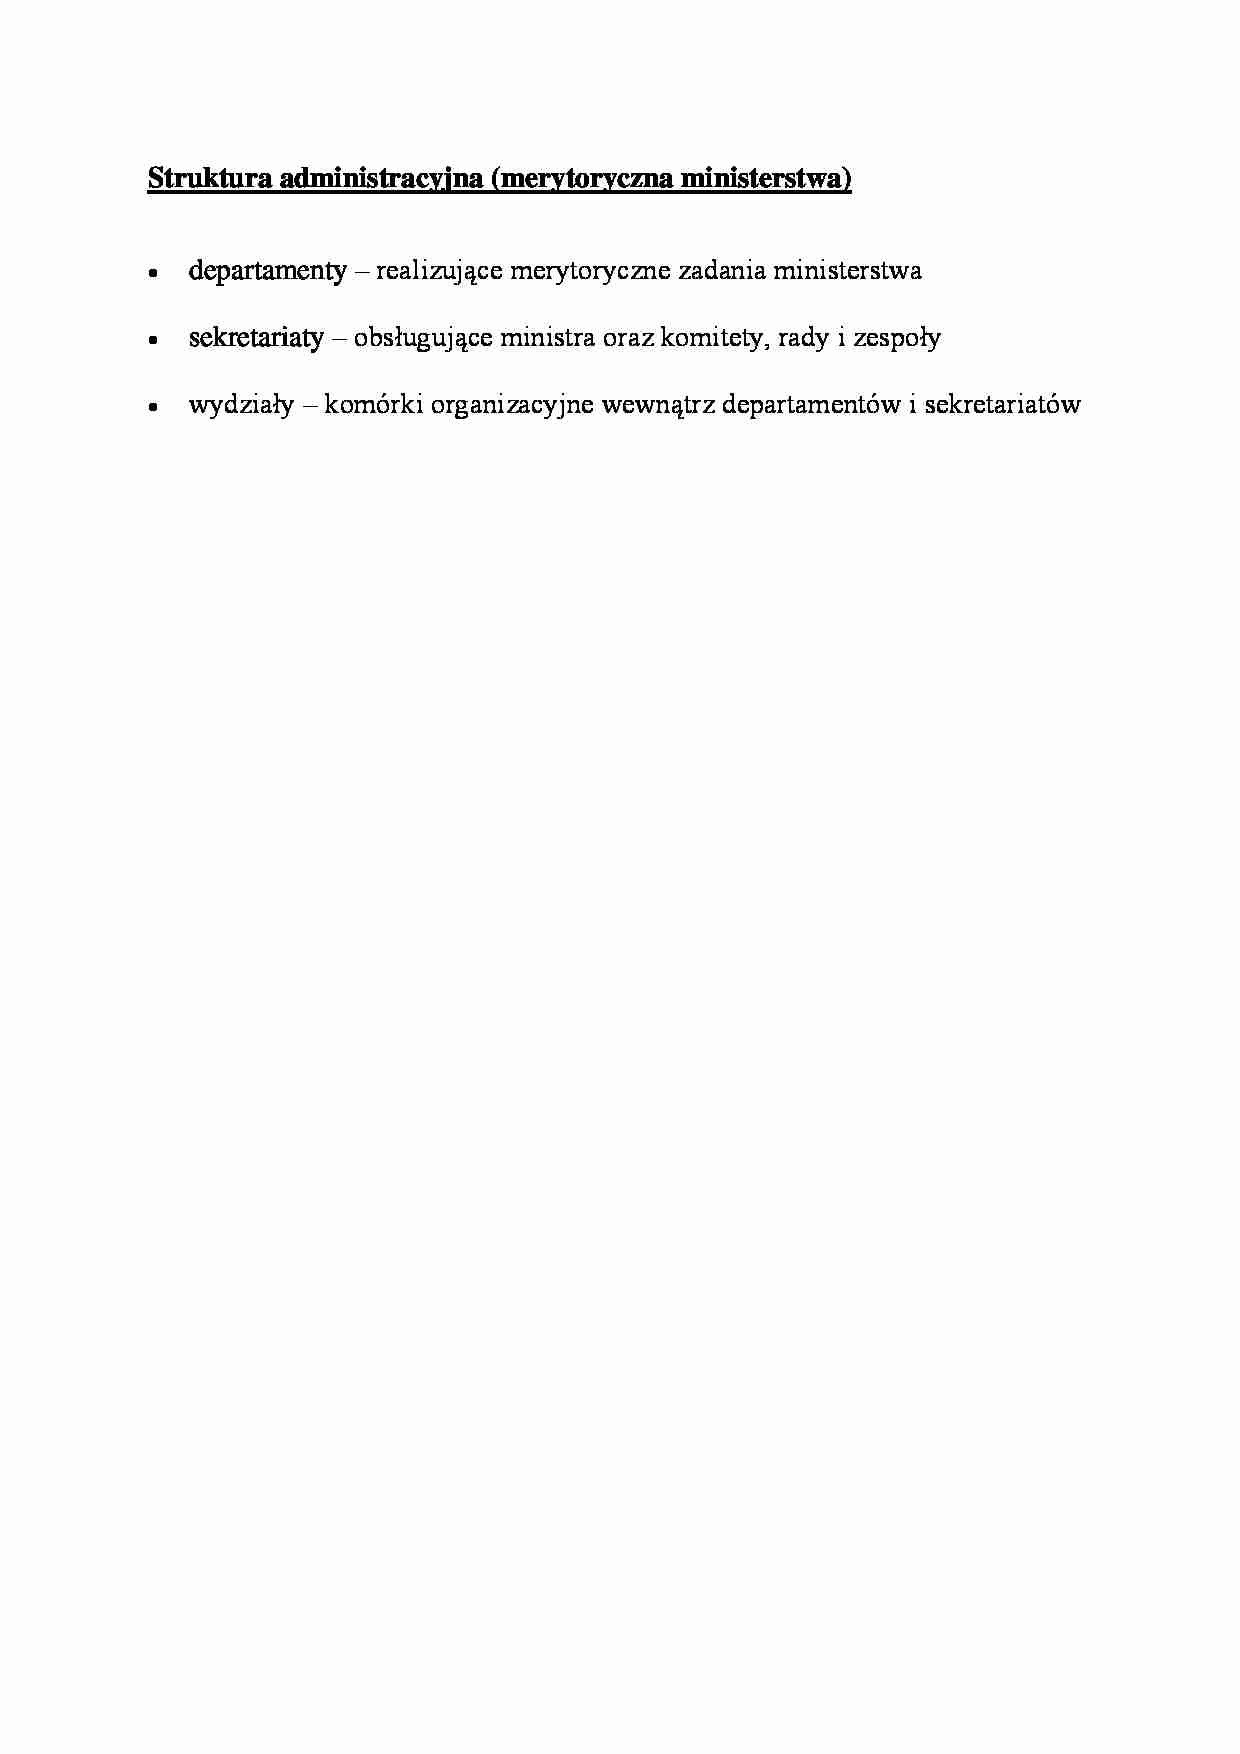 Struktura administracyjna - omówienie - strona 1